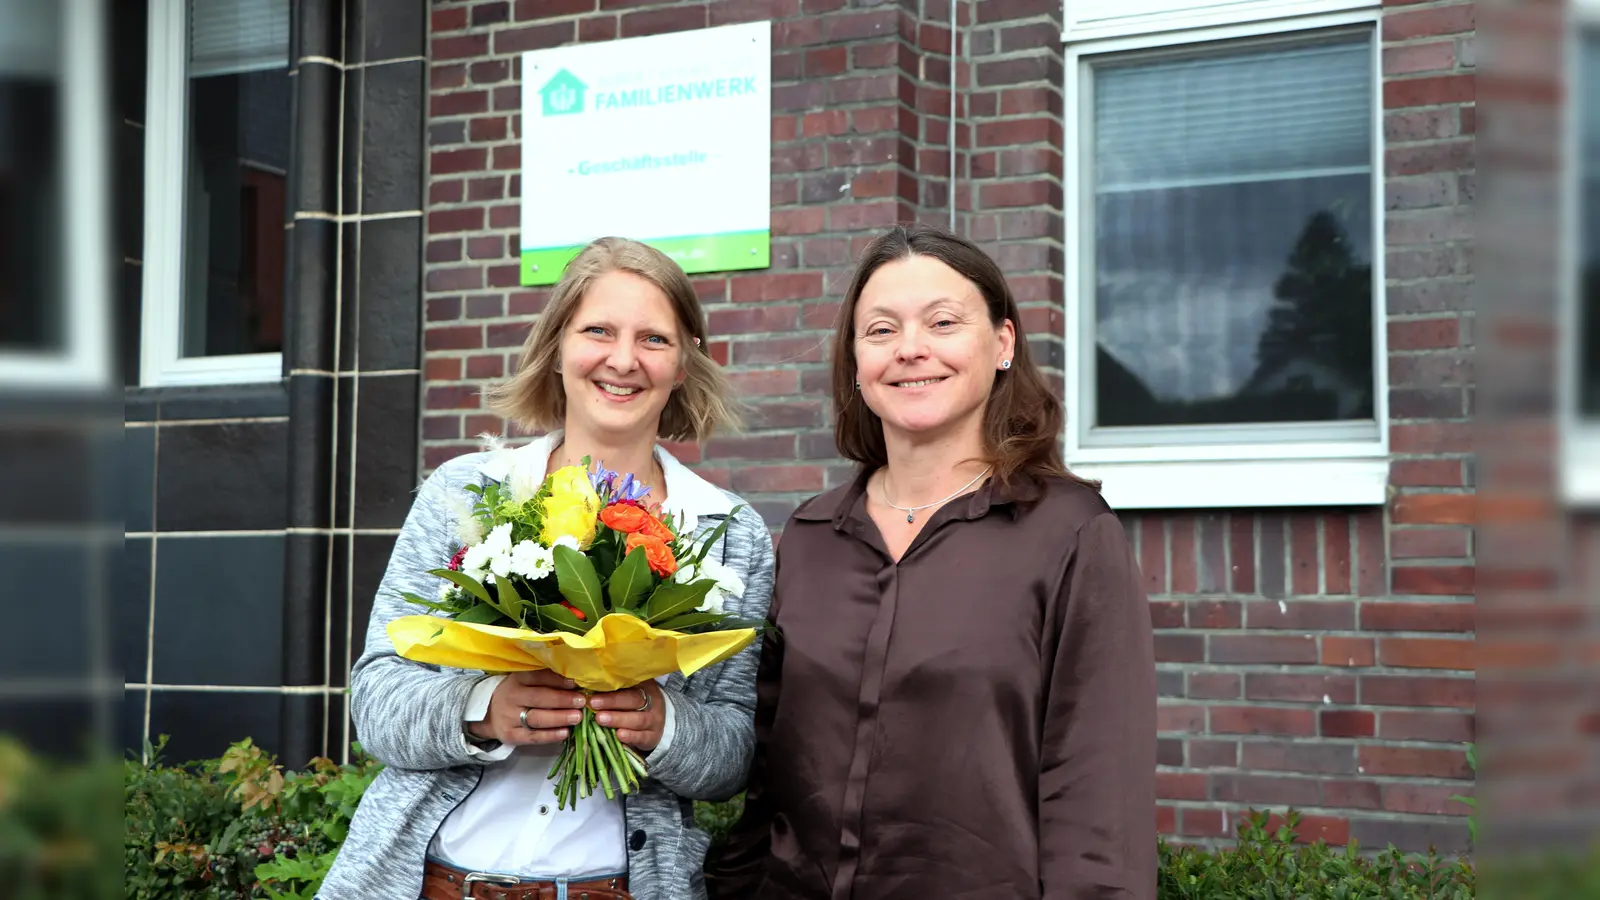 Blumen zur Begrüßung: Der Vorstand, Astrid Walter (rechts) überreicht der neuen Mitarbeiterin einen Blumenstrauß und wünscht auch im Namen der Belegschaft einen guten Einstieg.  (Foto: privat)